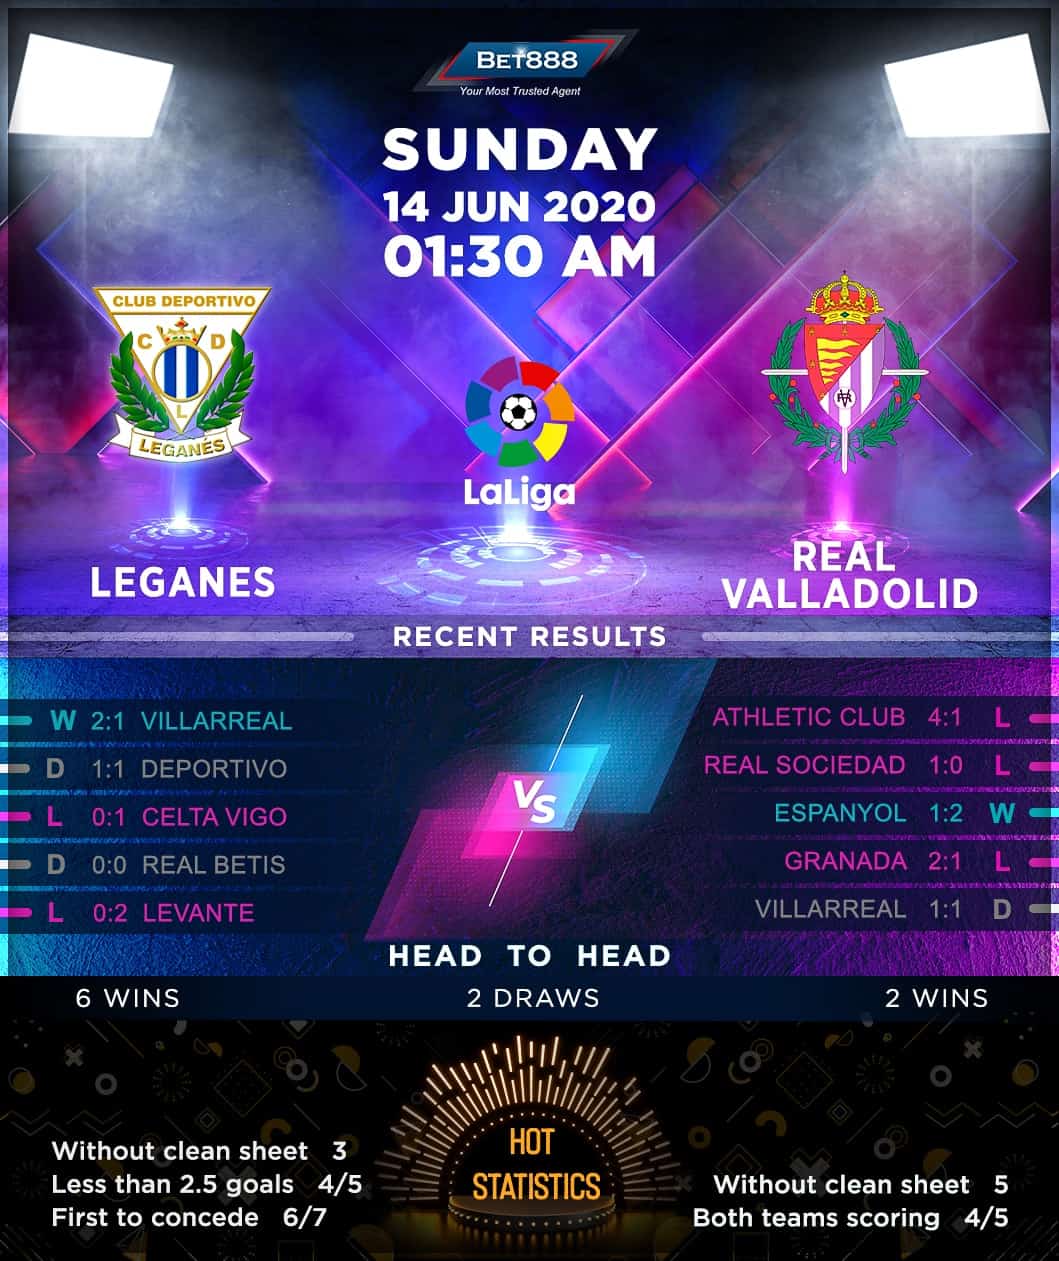 Leganes vs Real Valladolid 14/06/20